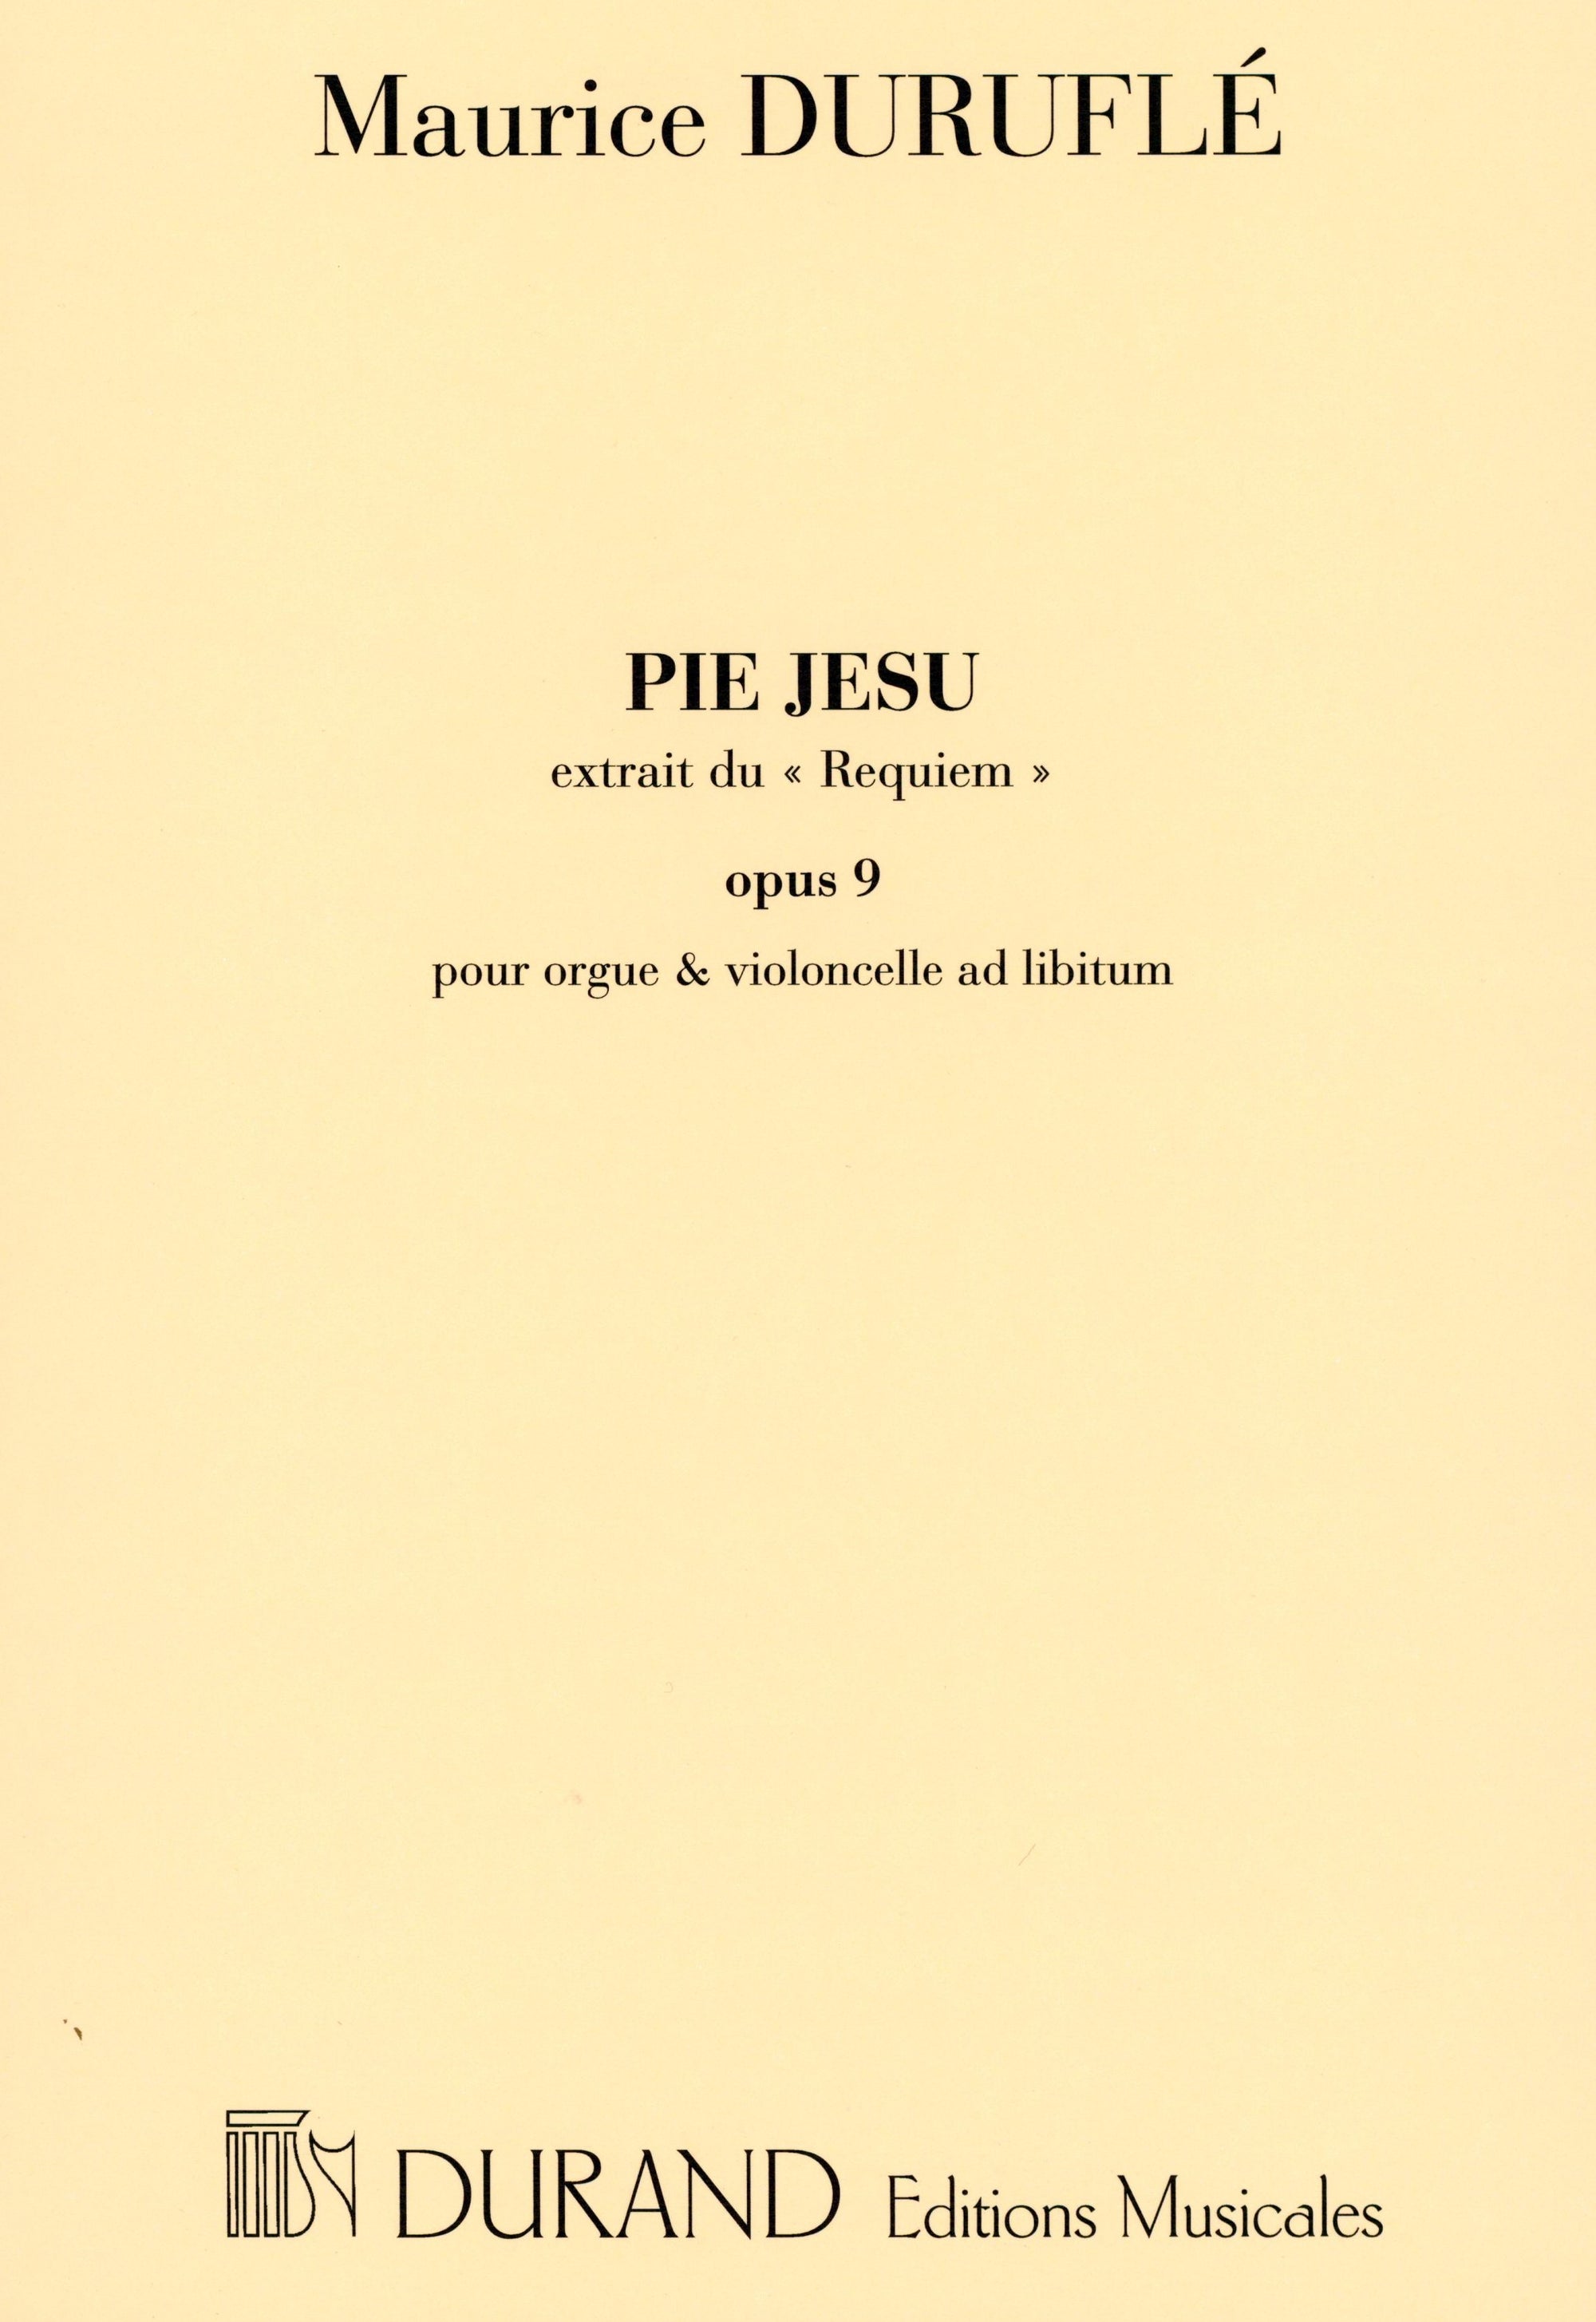 Duruflé: Pie Jesu from Requiem, Op. 9